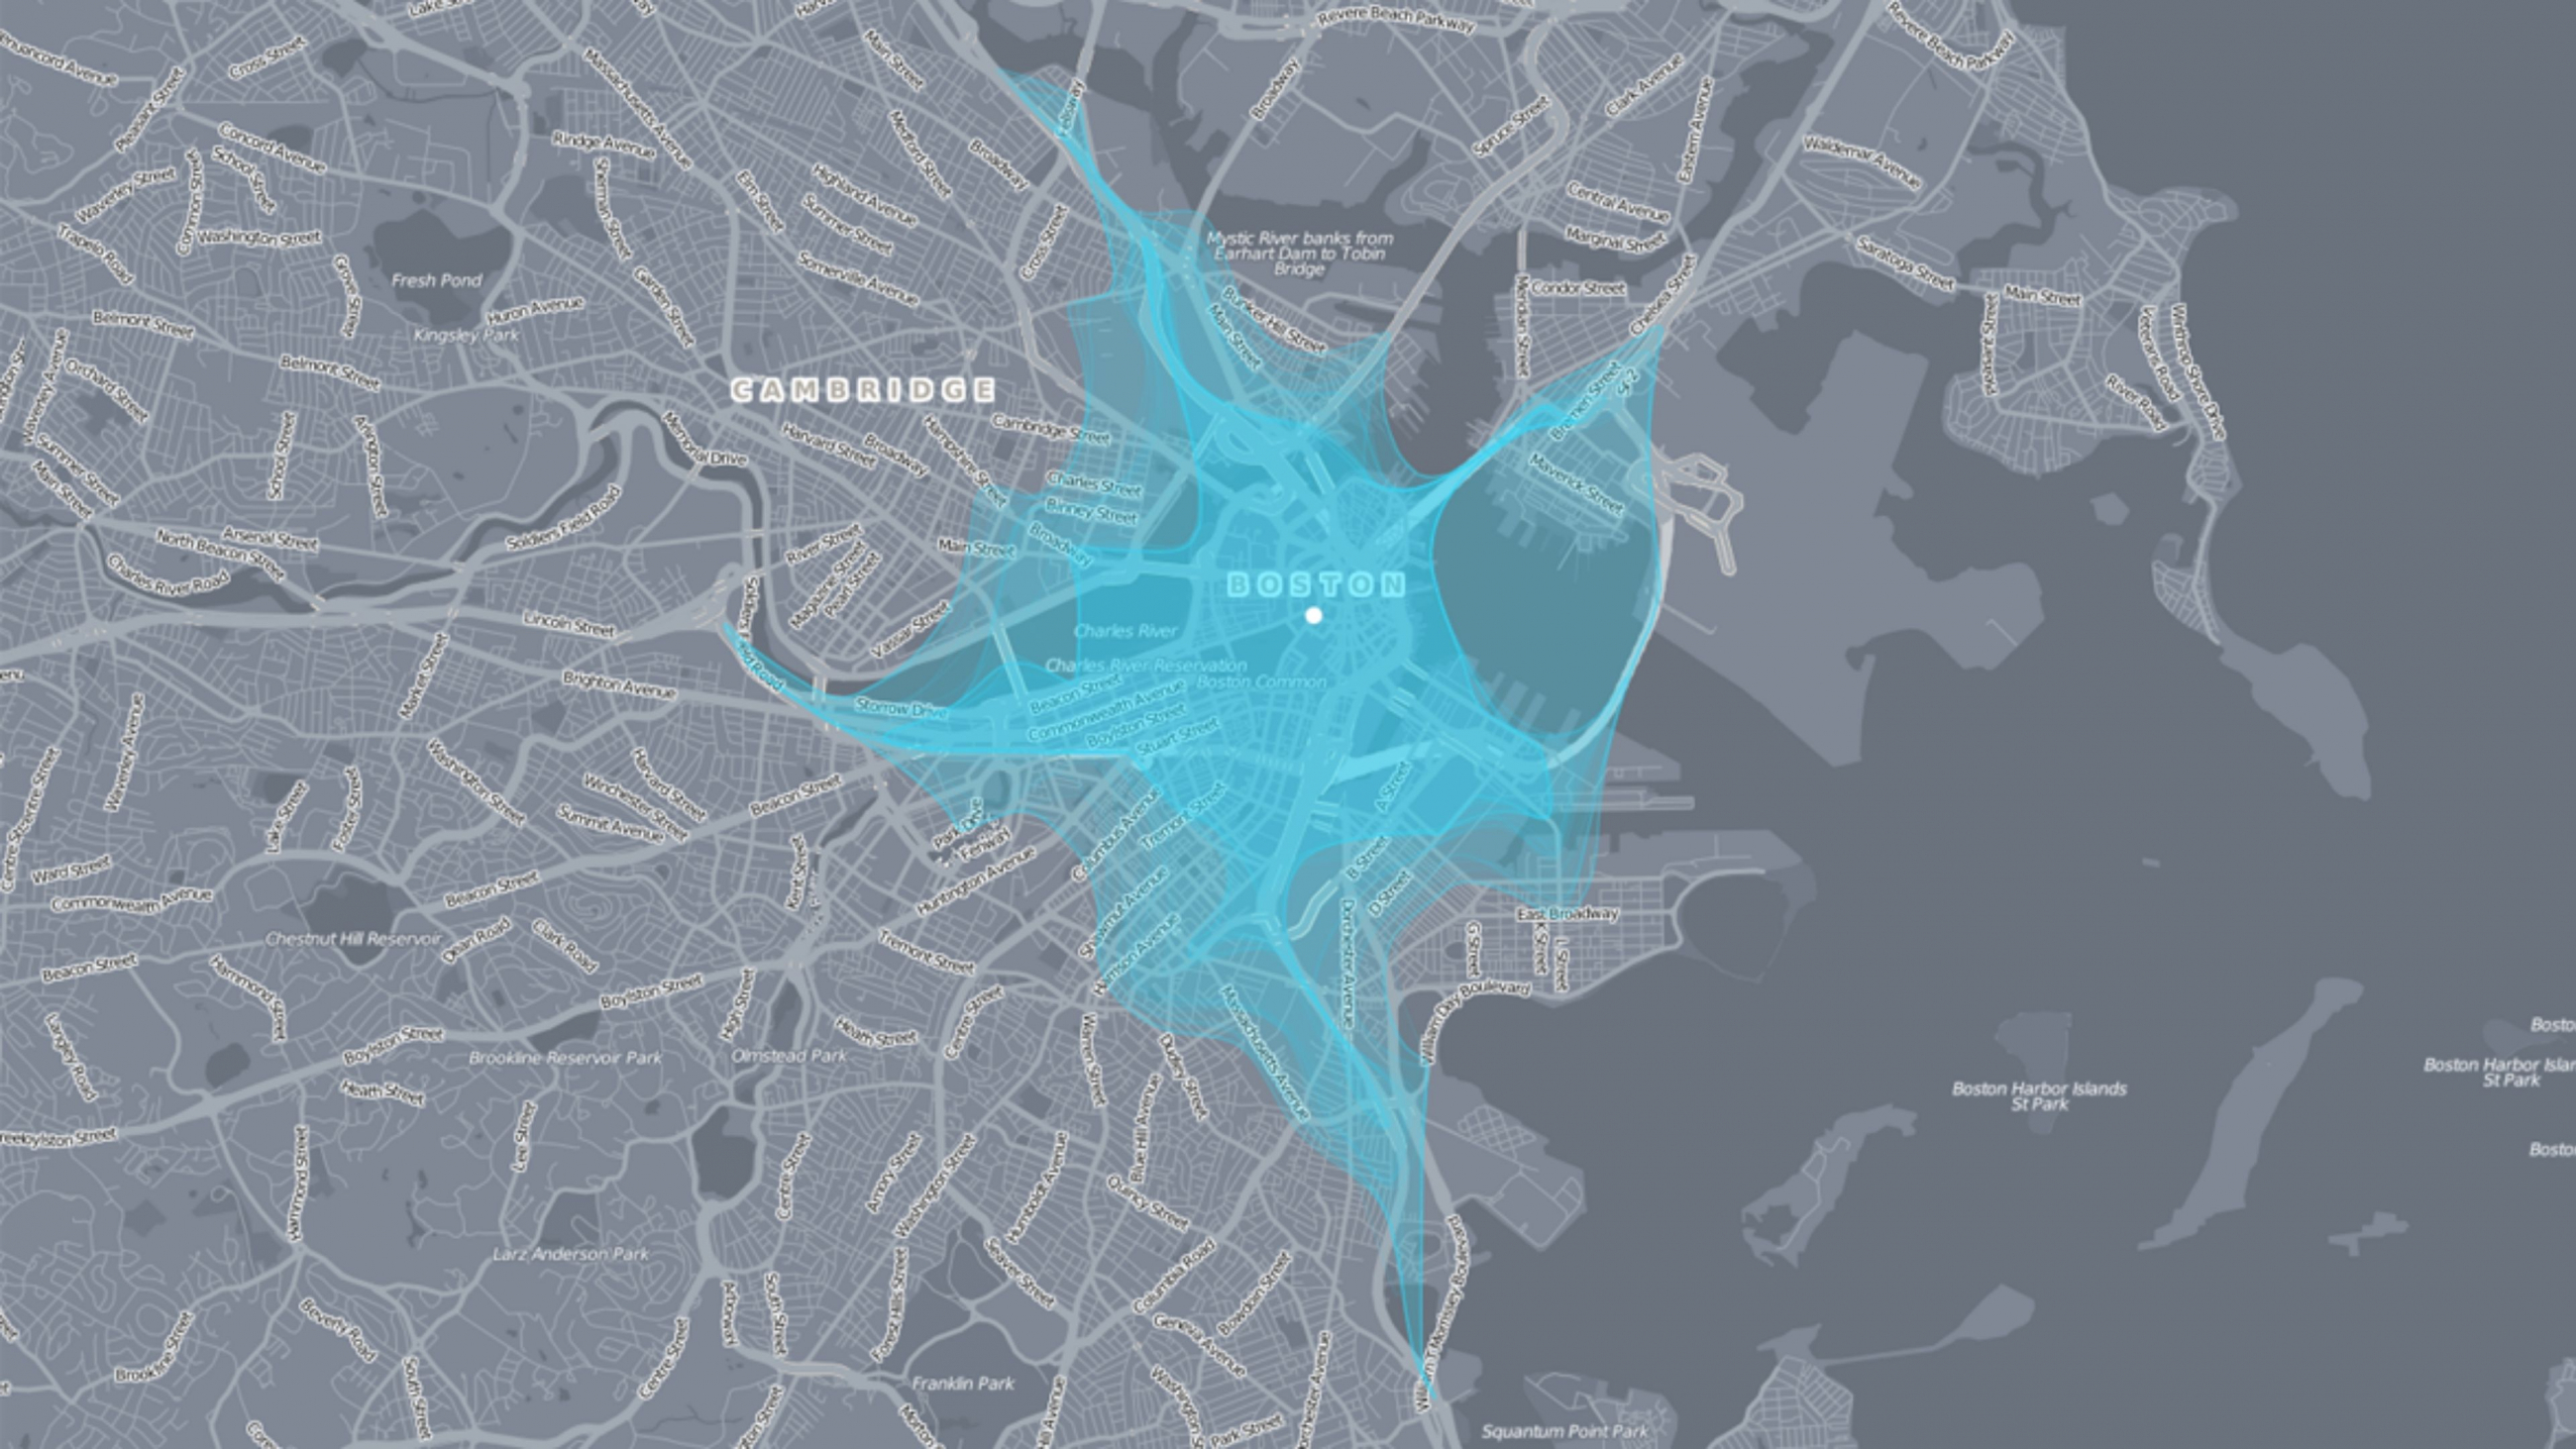  Farbig hervorgehobene interaktive Darstellung von Bewegungsräumen in Boston